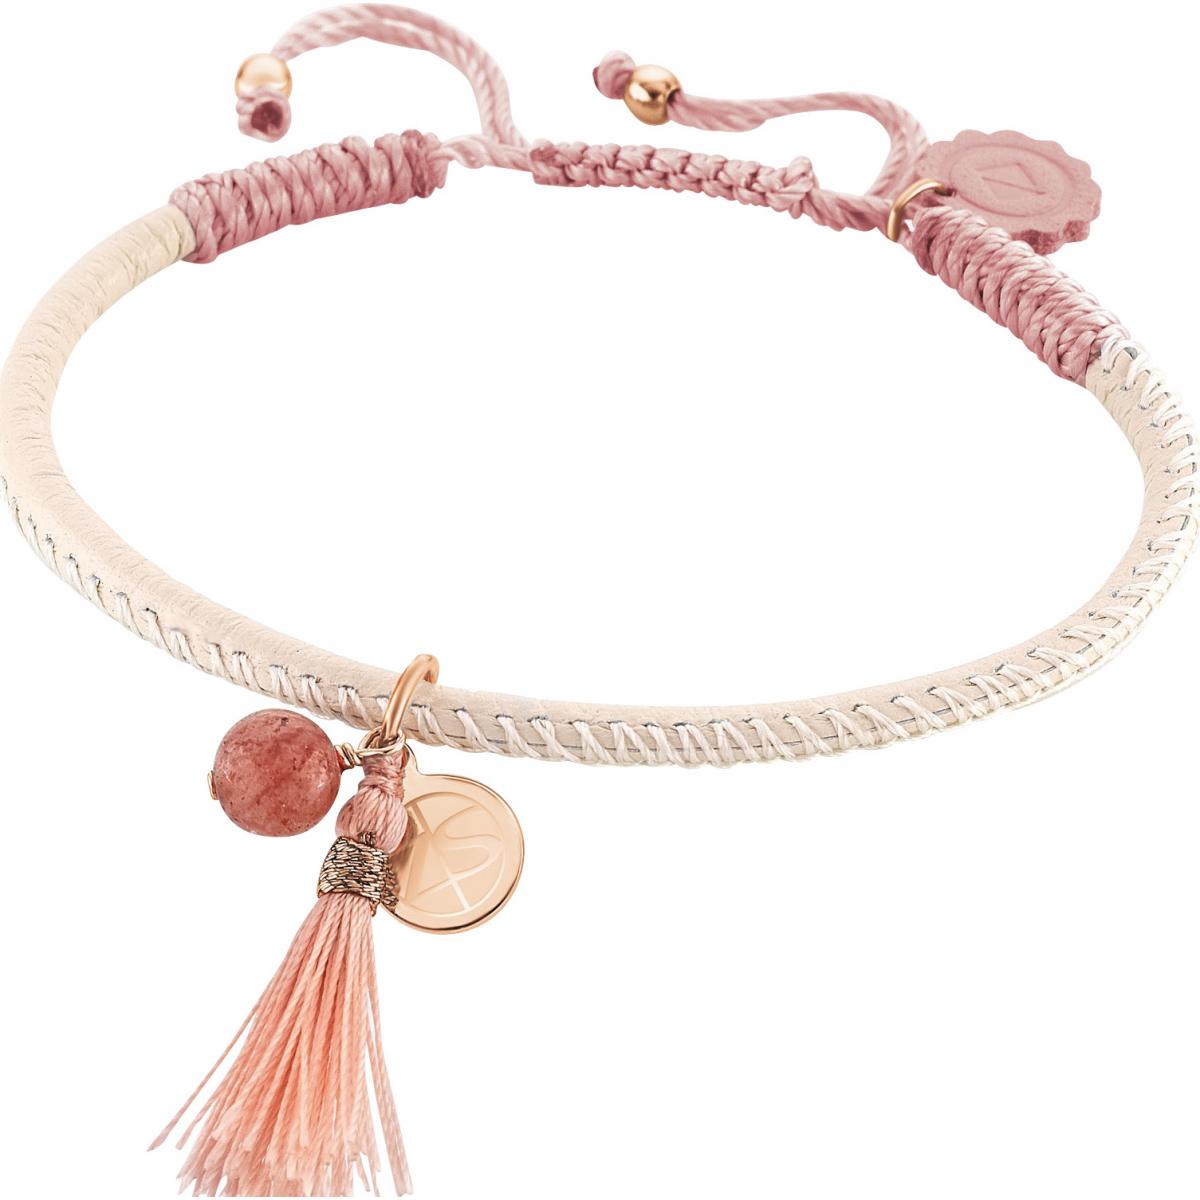 Bracelet Zeades Sbc01008 - Bracelet Or Rose Cuir Pompon Femme